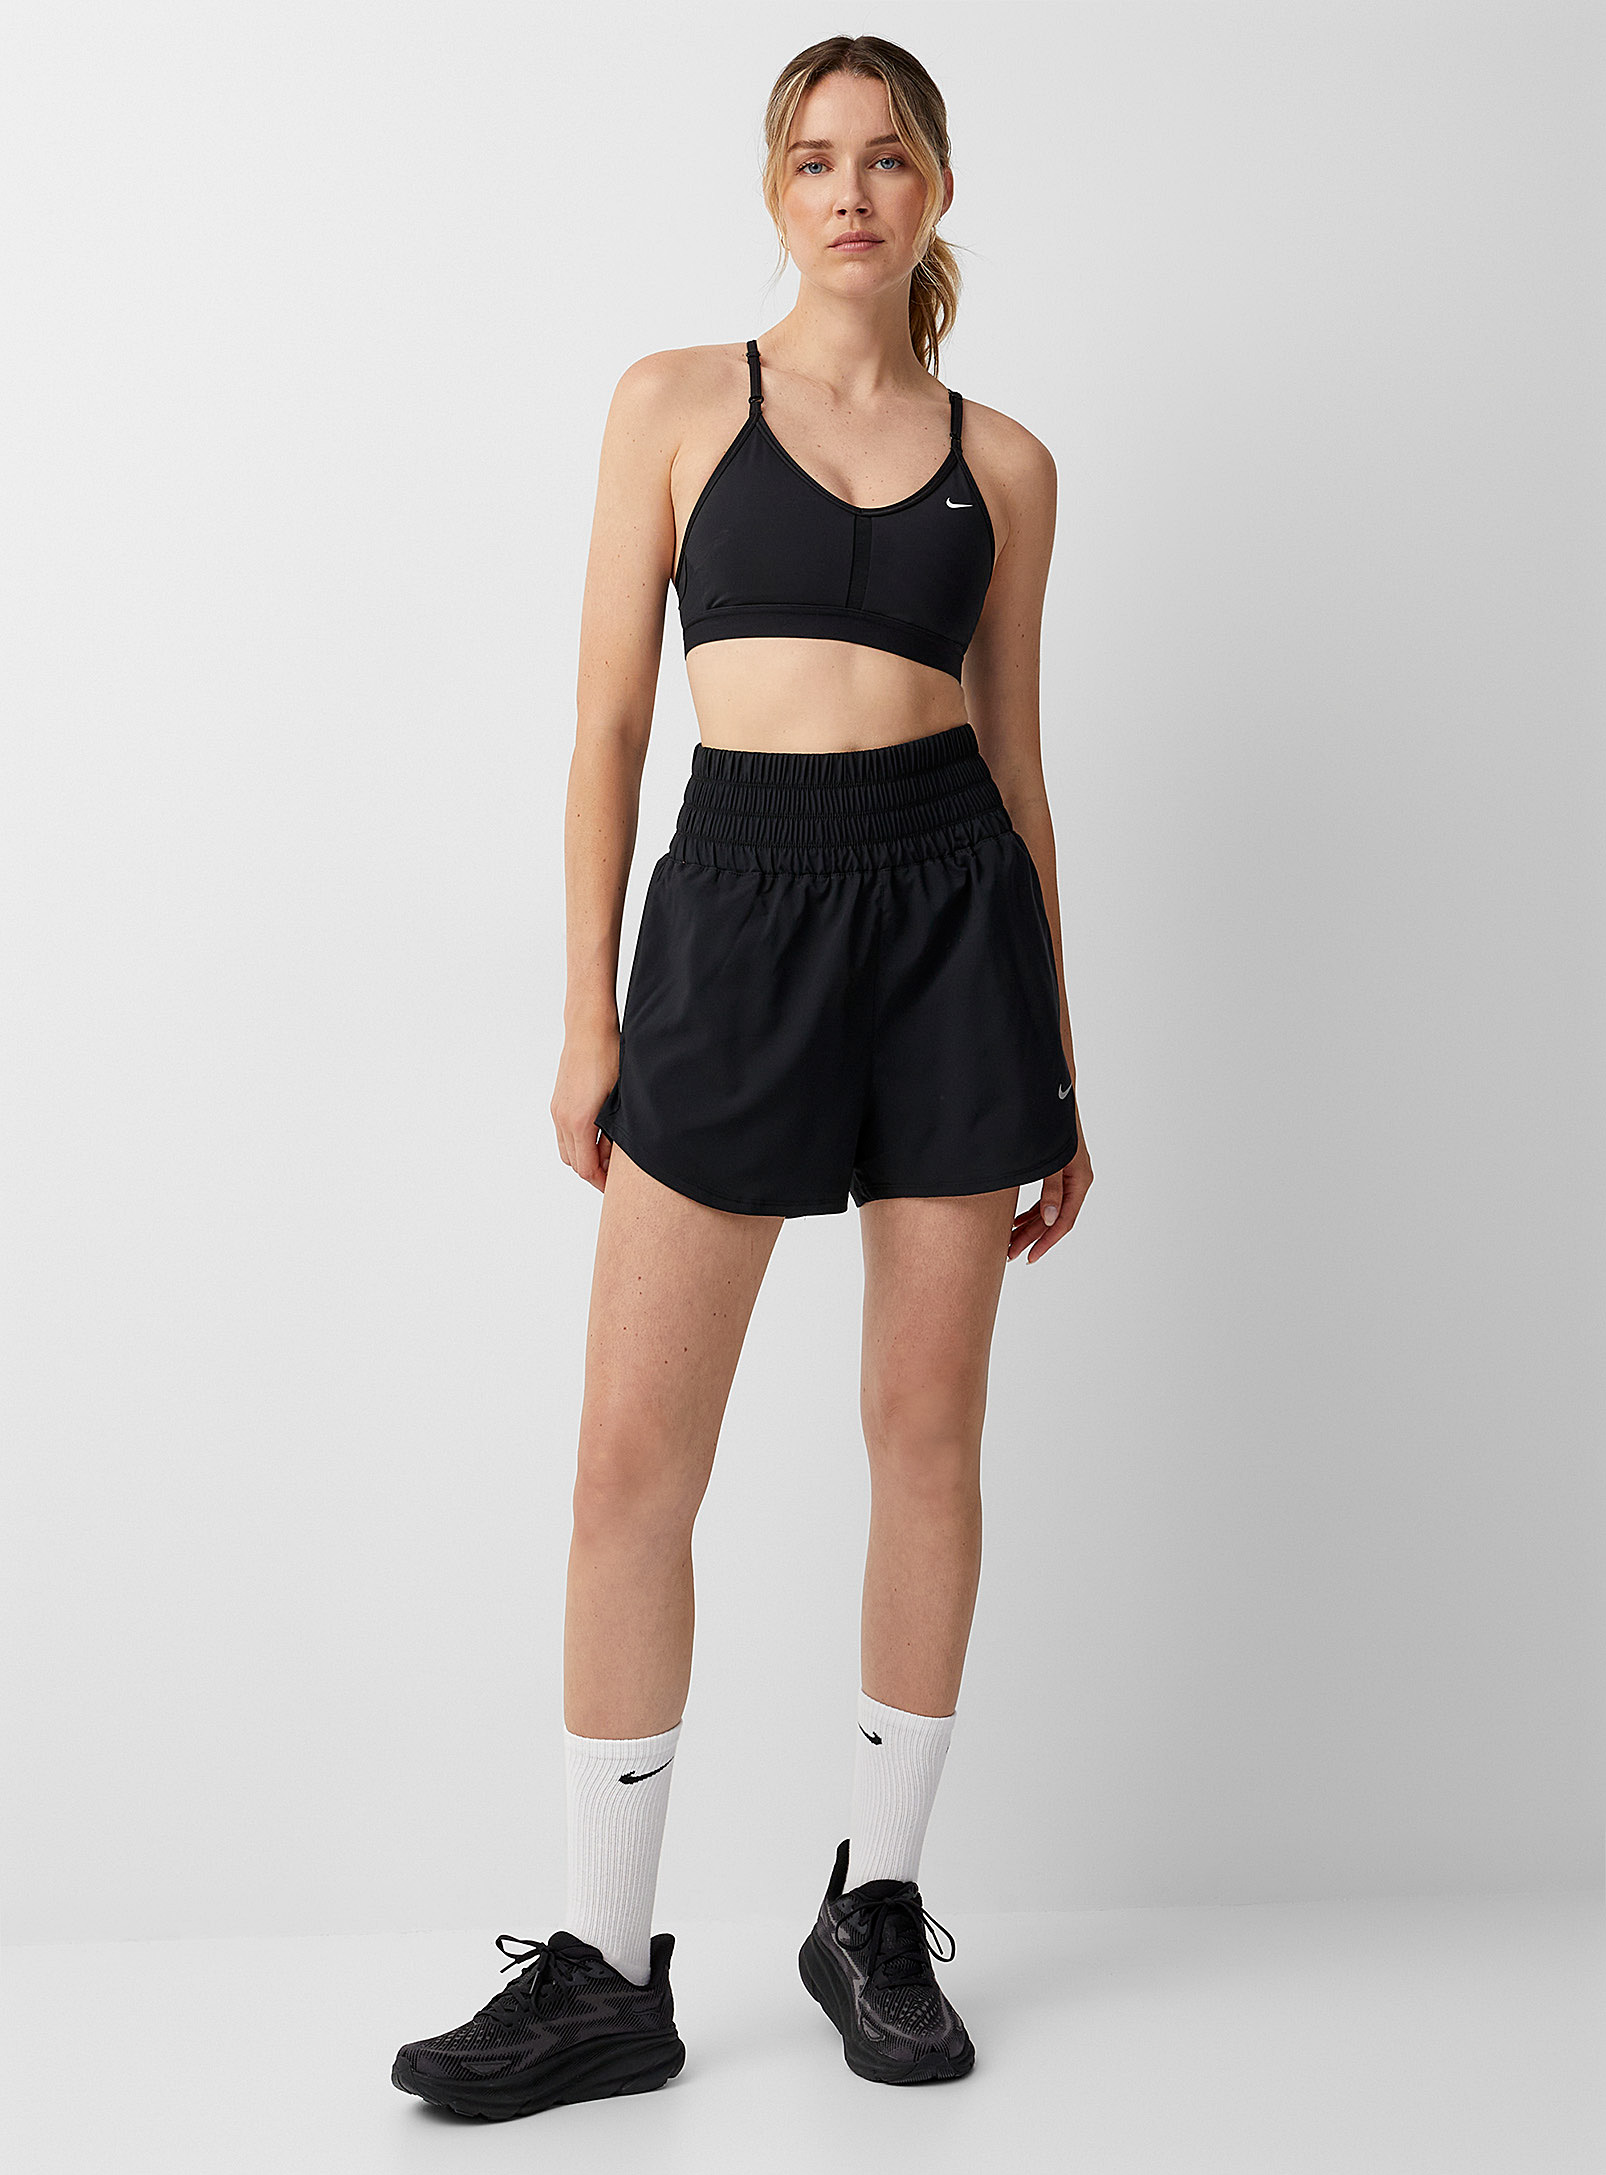 Nike - Le short léger taille haute